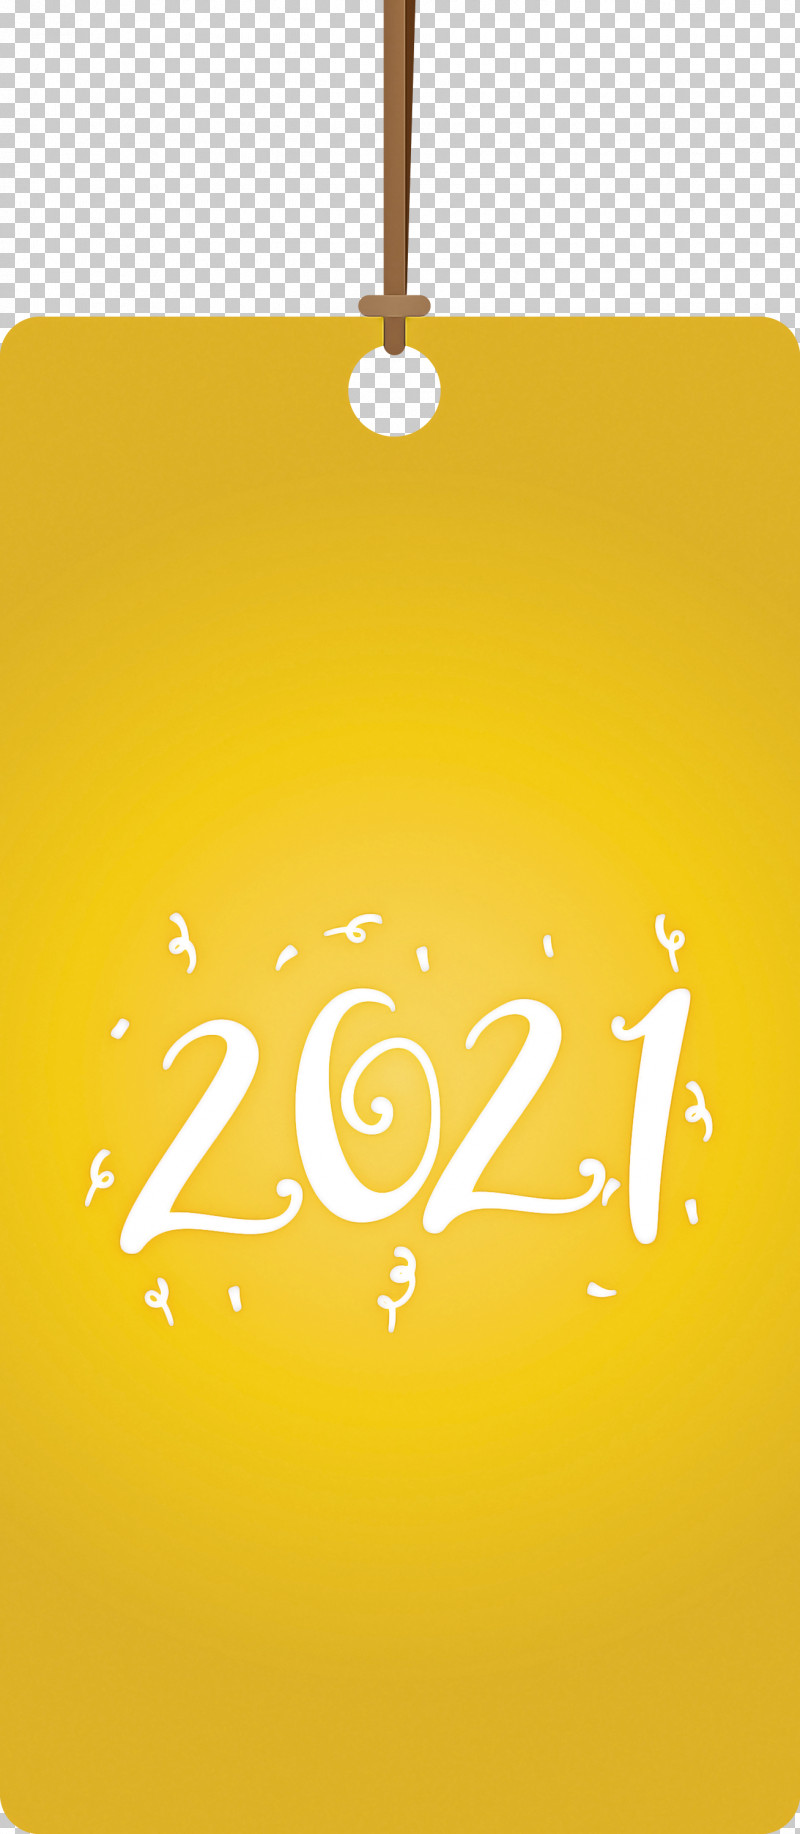 2021 Happy New Year 2021 Happy New Year Tag 2021 New Year PNG, Clipart, 2021 Happy New Year, 2021 Happy New Year Tag, 2021 New Year, Meter, Yellow Free PNG Download